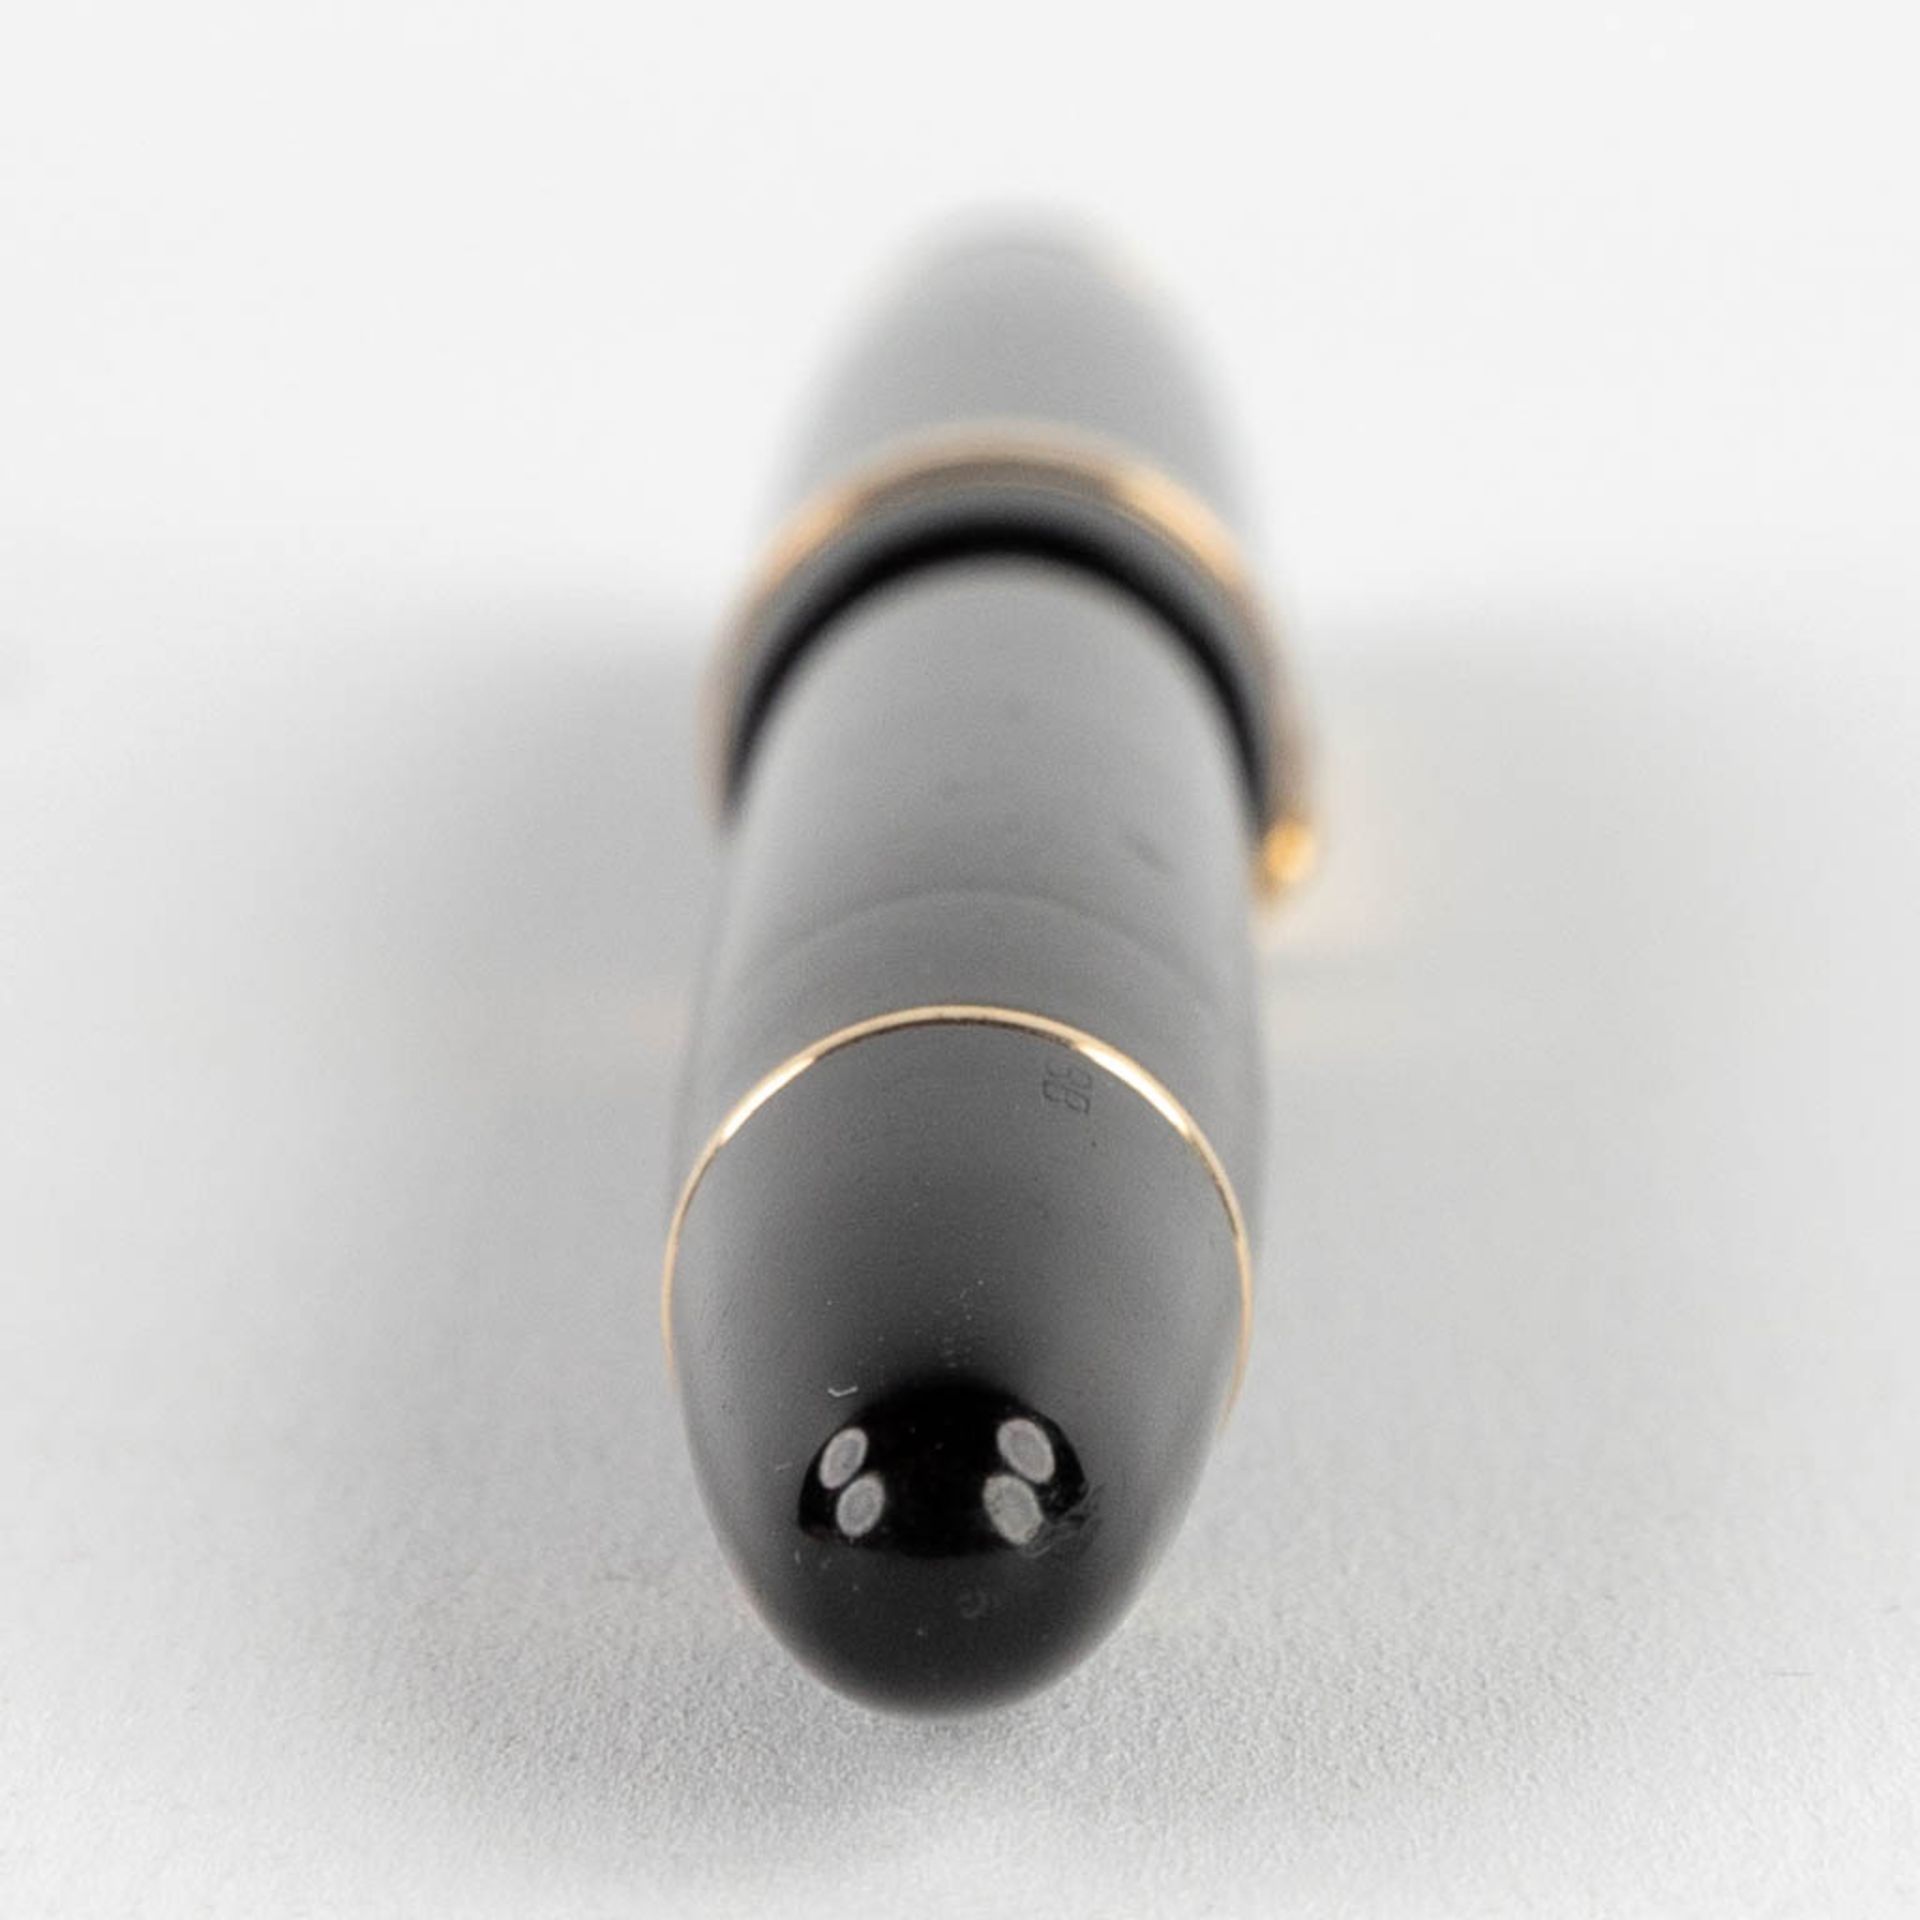 Montblanc Masterpiece, a fountain pen with 14 karat gold nib. - Bild 5 aus 12